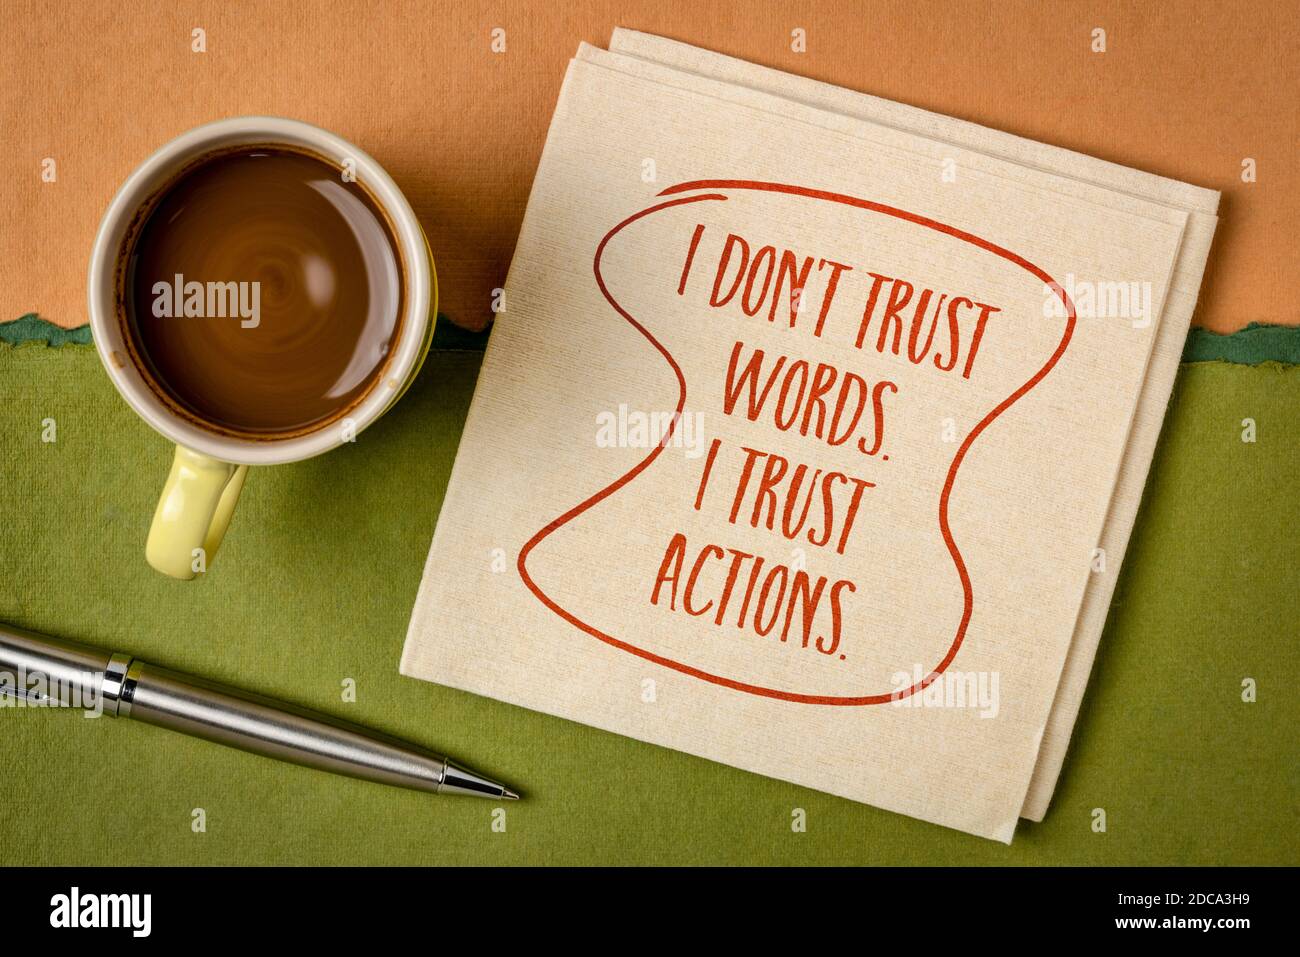 Non mi fido delle parole. Mi fido delle azioni. Calligrafia ispirata su un tovagliolo con una tazza di caffè. Concetto di sviluppo personale. Foto Stock